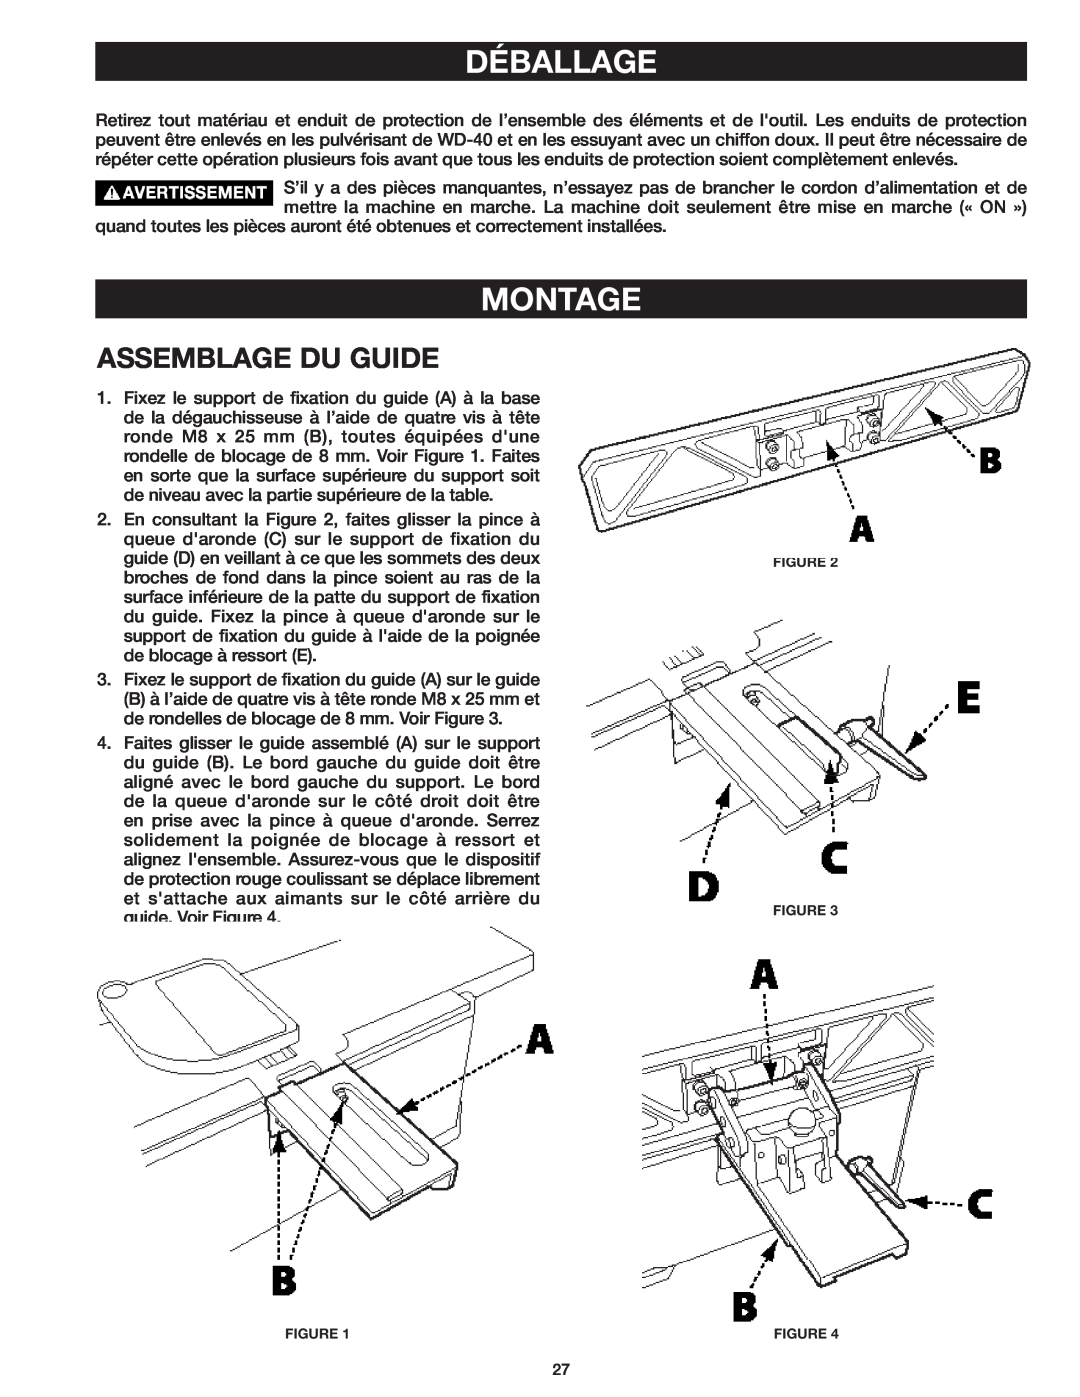 Delta 37-071 instruction manual Montage, Assemblage Du Guide, Déballage 